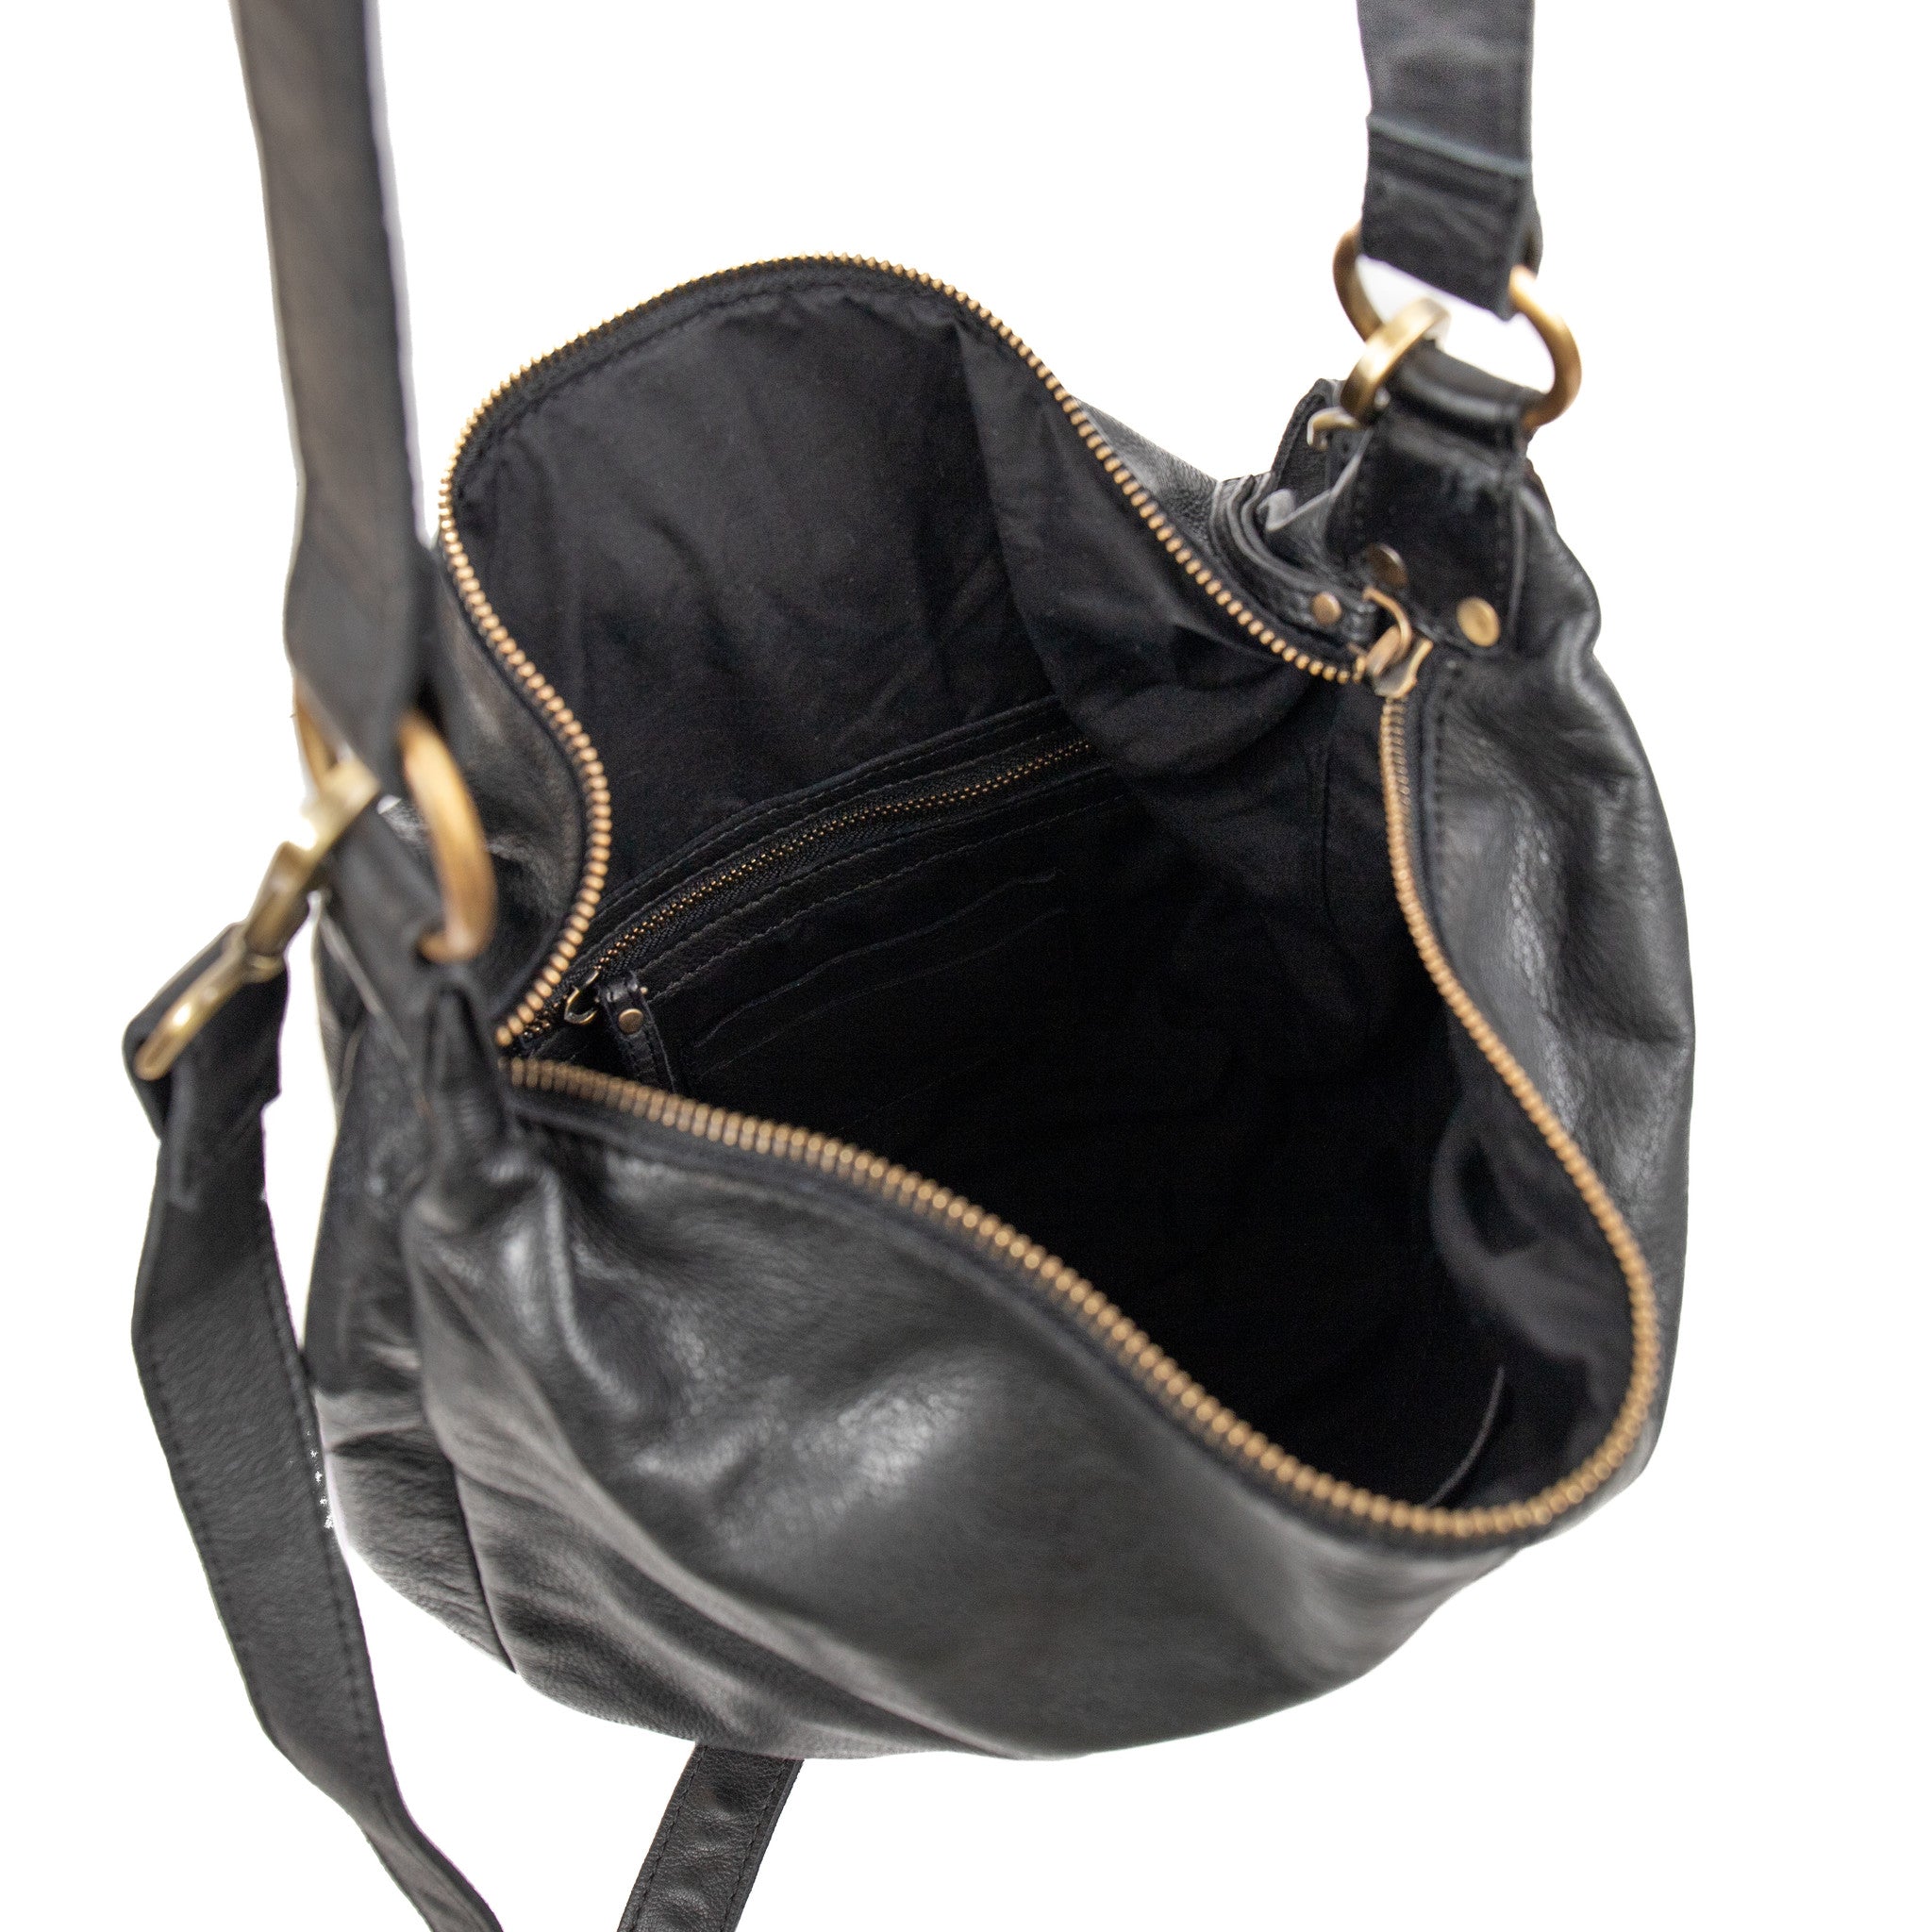 Hand/shoulder bag 'Rosalita' black - MJ 31